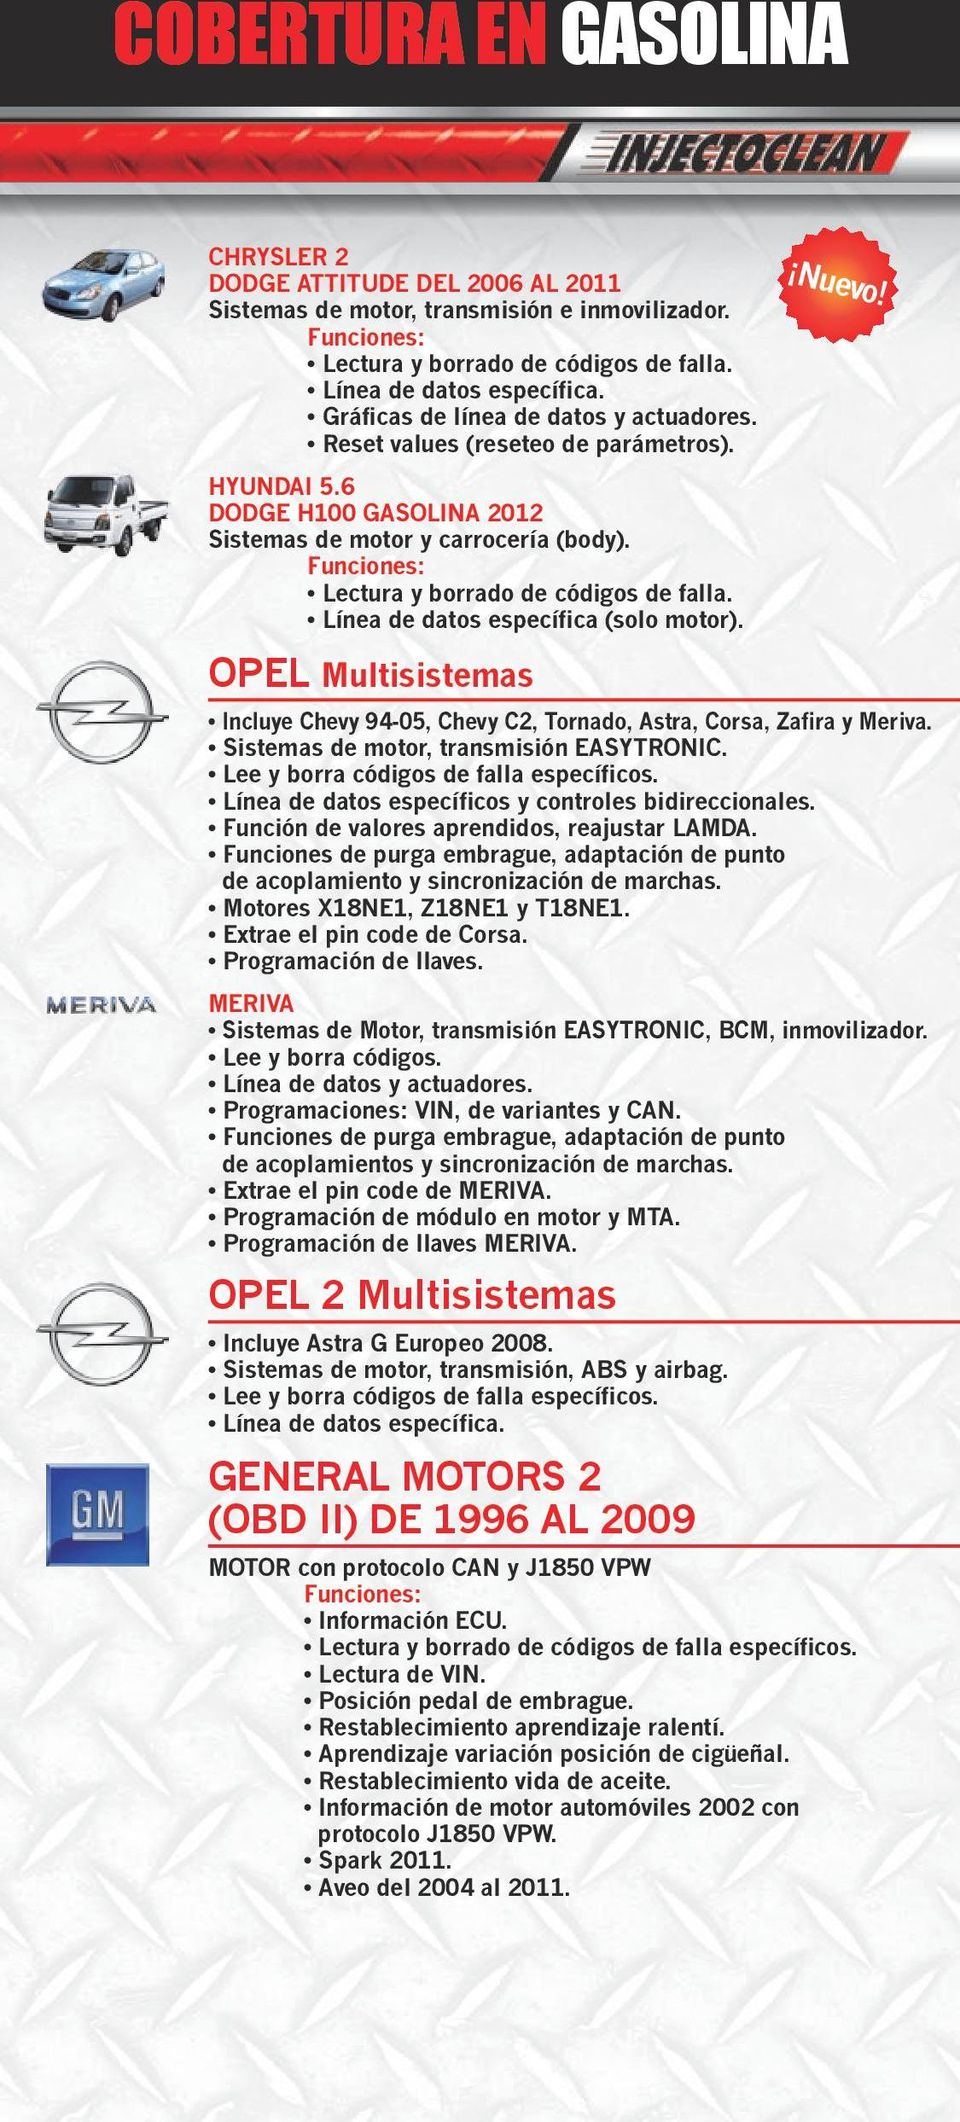 OPEL Multisistemas GENERAL MOTORS 2 (OBD II) DE 1996 AL 2009 Incluye Chevy 94-05, Chevy C2, Tornado, Astra, Corsa, Zafira y Meriva. Sistemas de motor, transmisión EASYTRONIC.